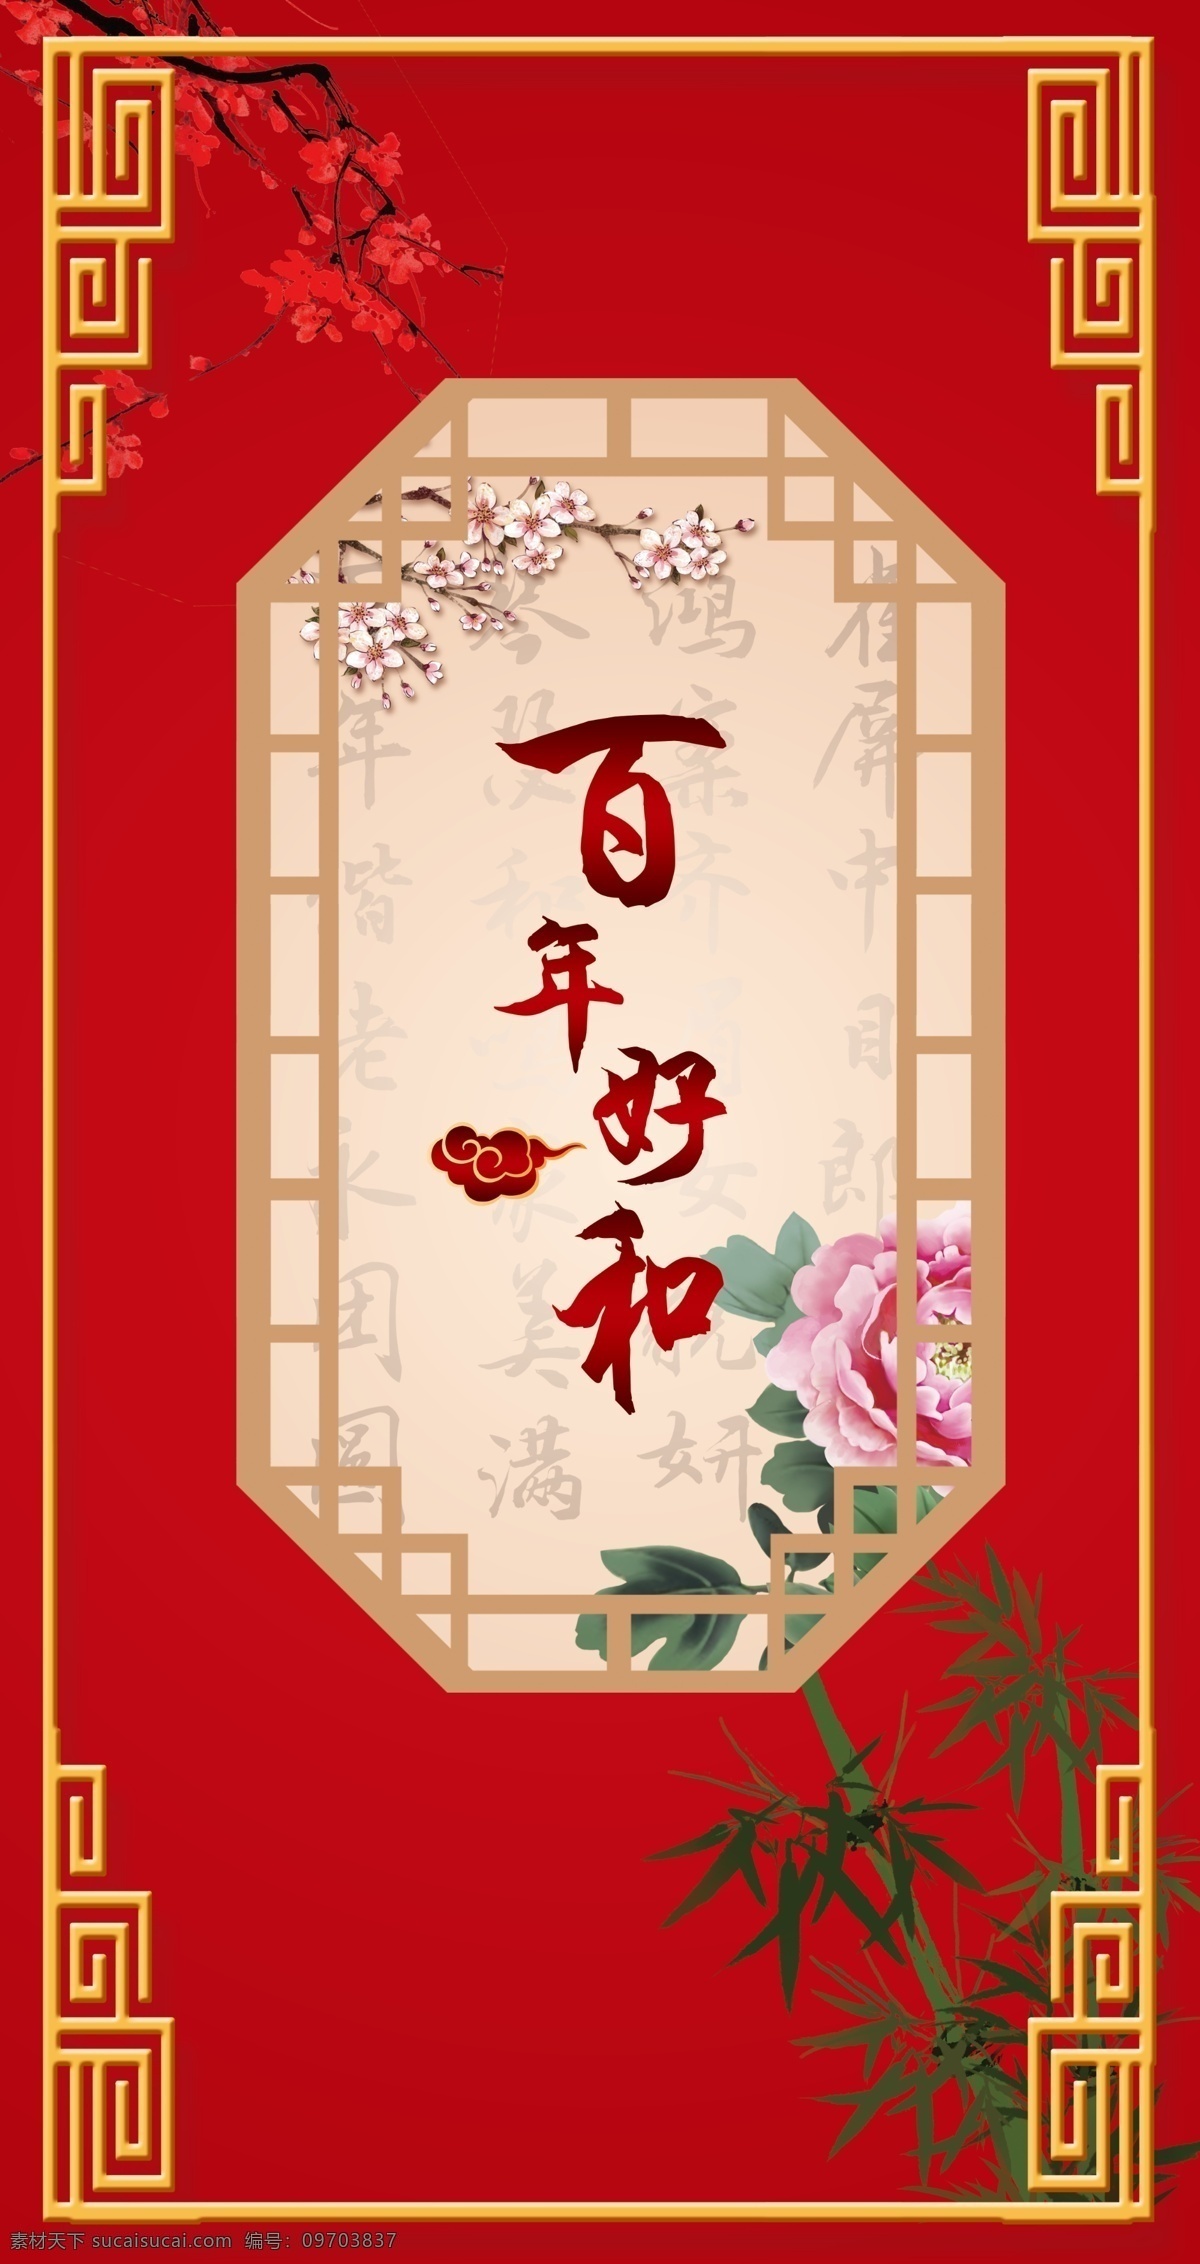 中式婚礼图片 中式婚礼 百年好合 红金 古典 花